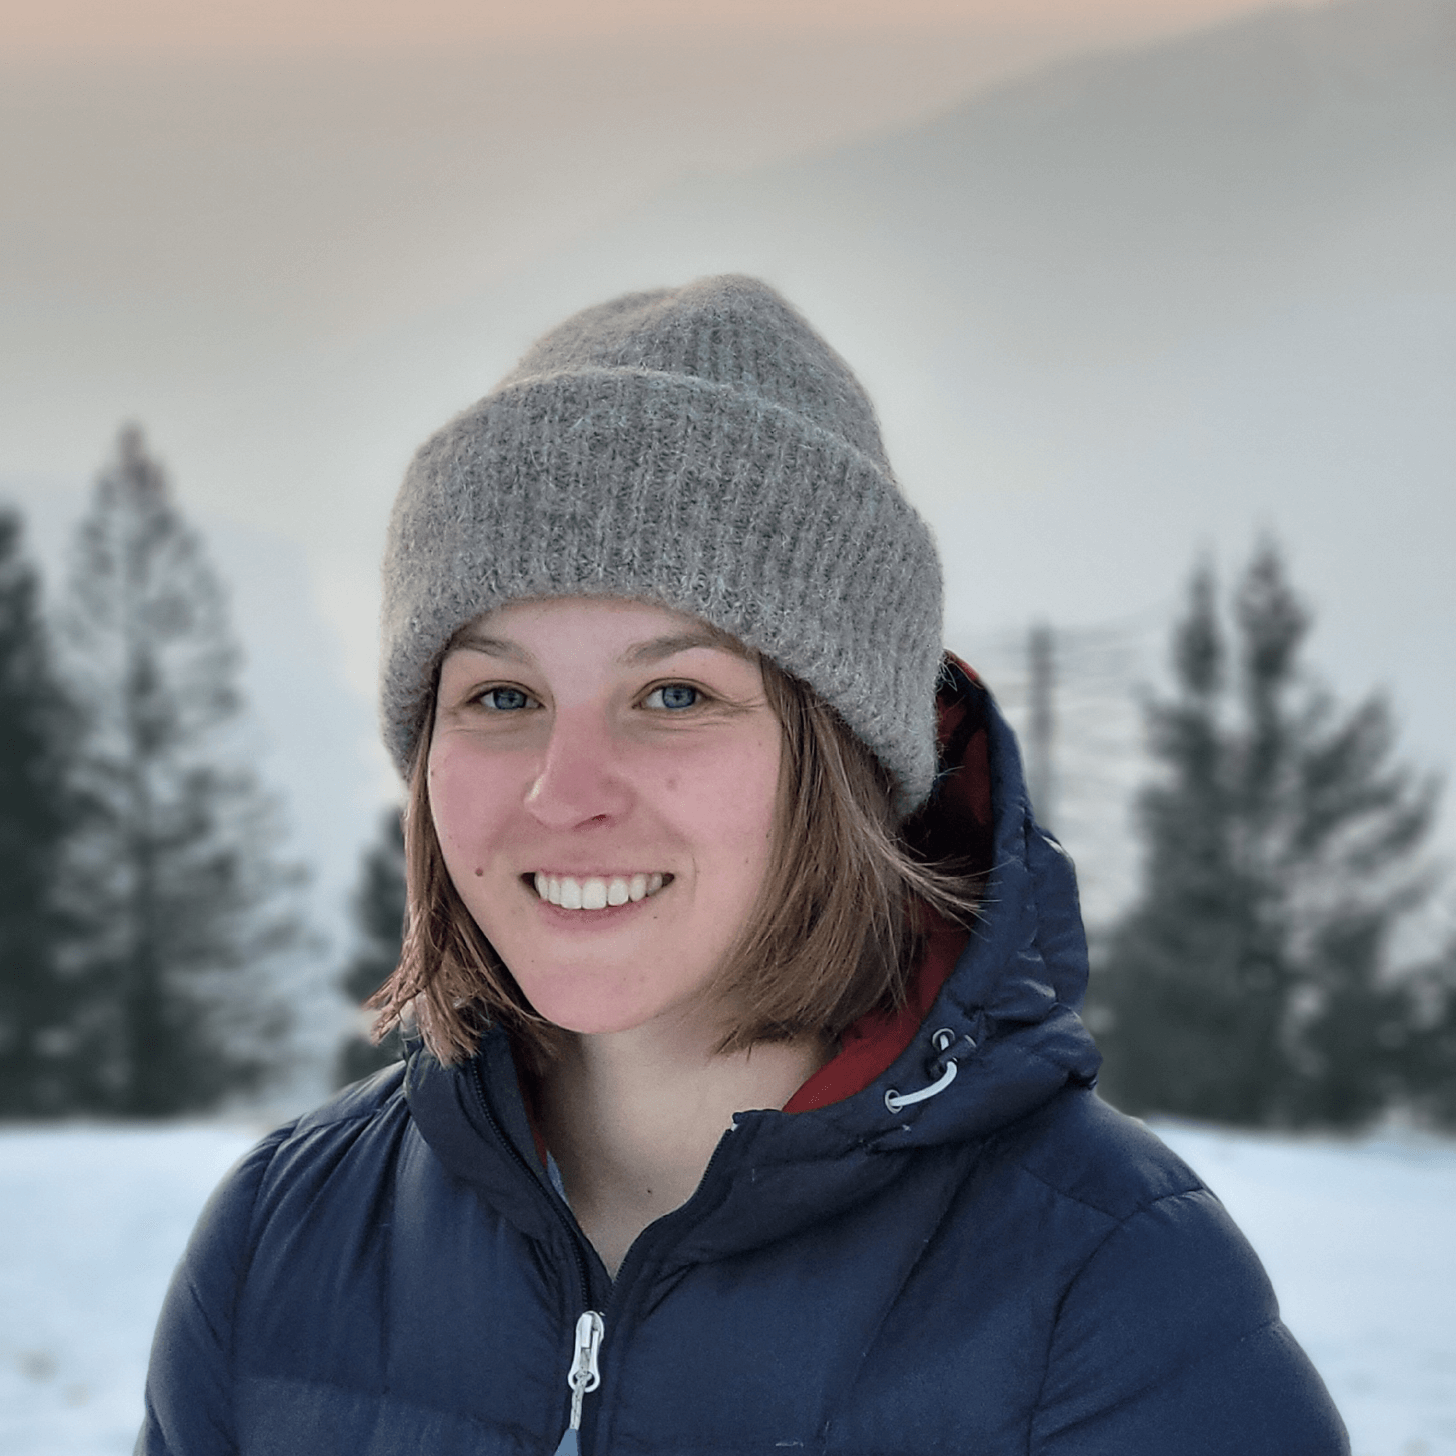 Anna_Lena lächelt vor schneeigem Hintergrund